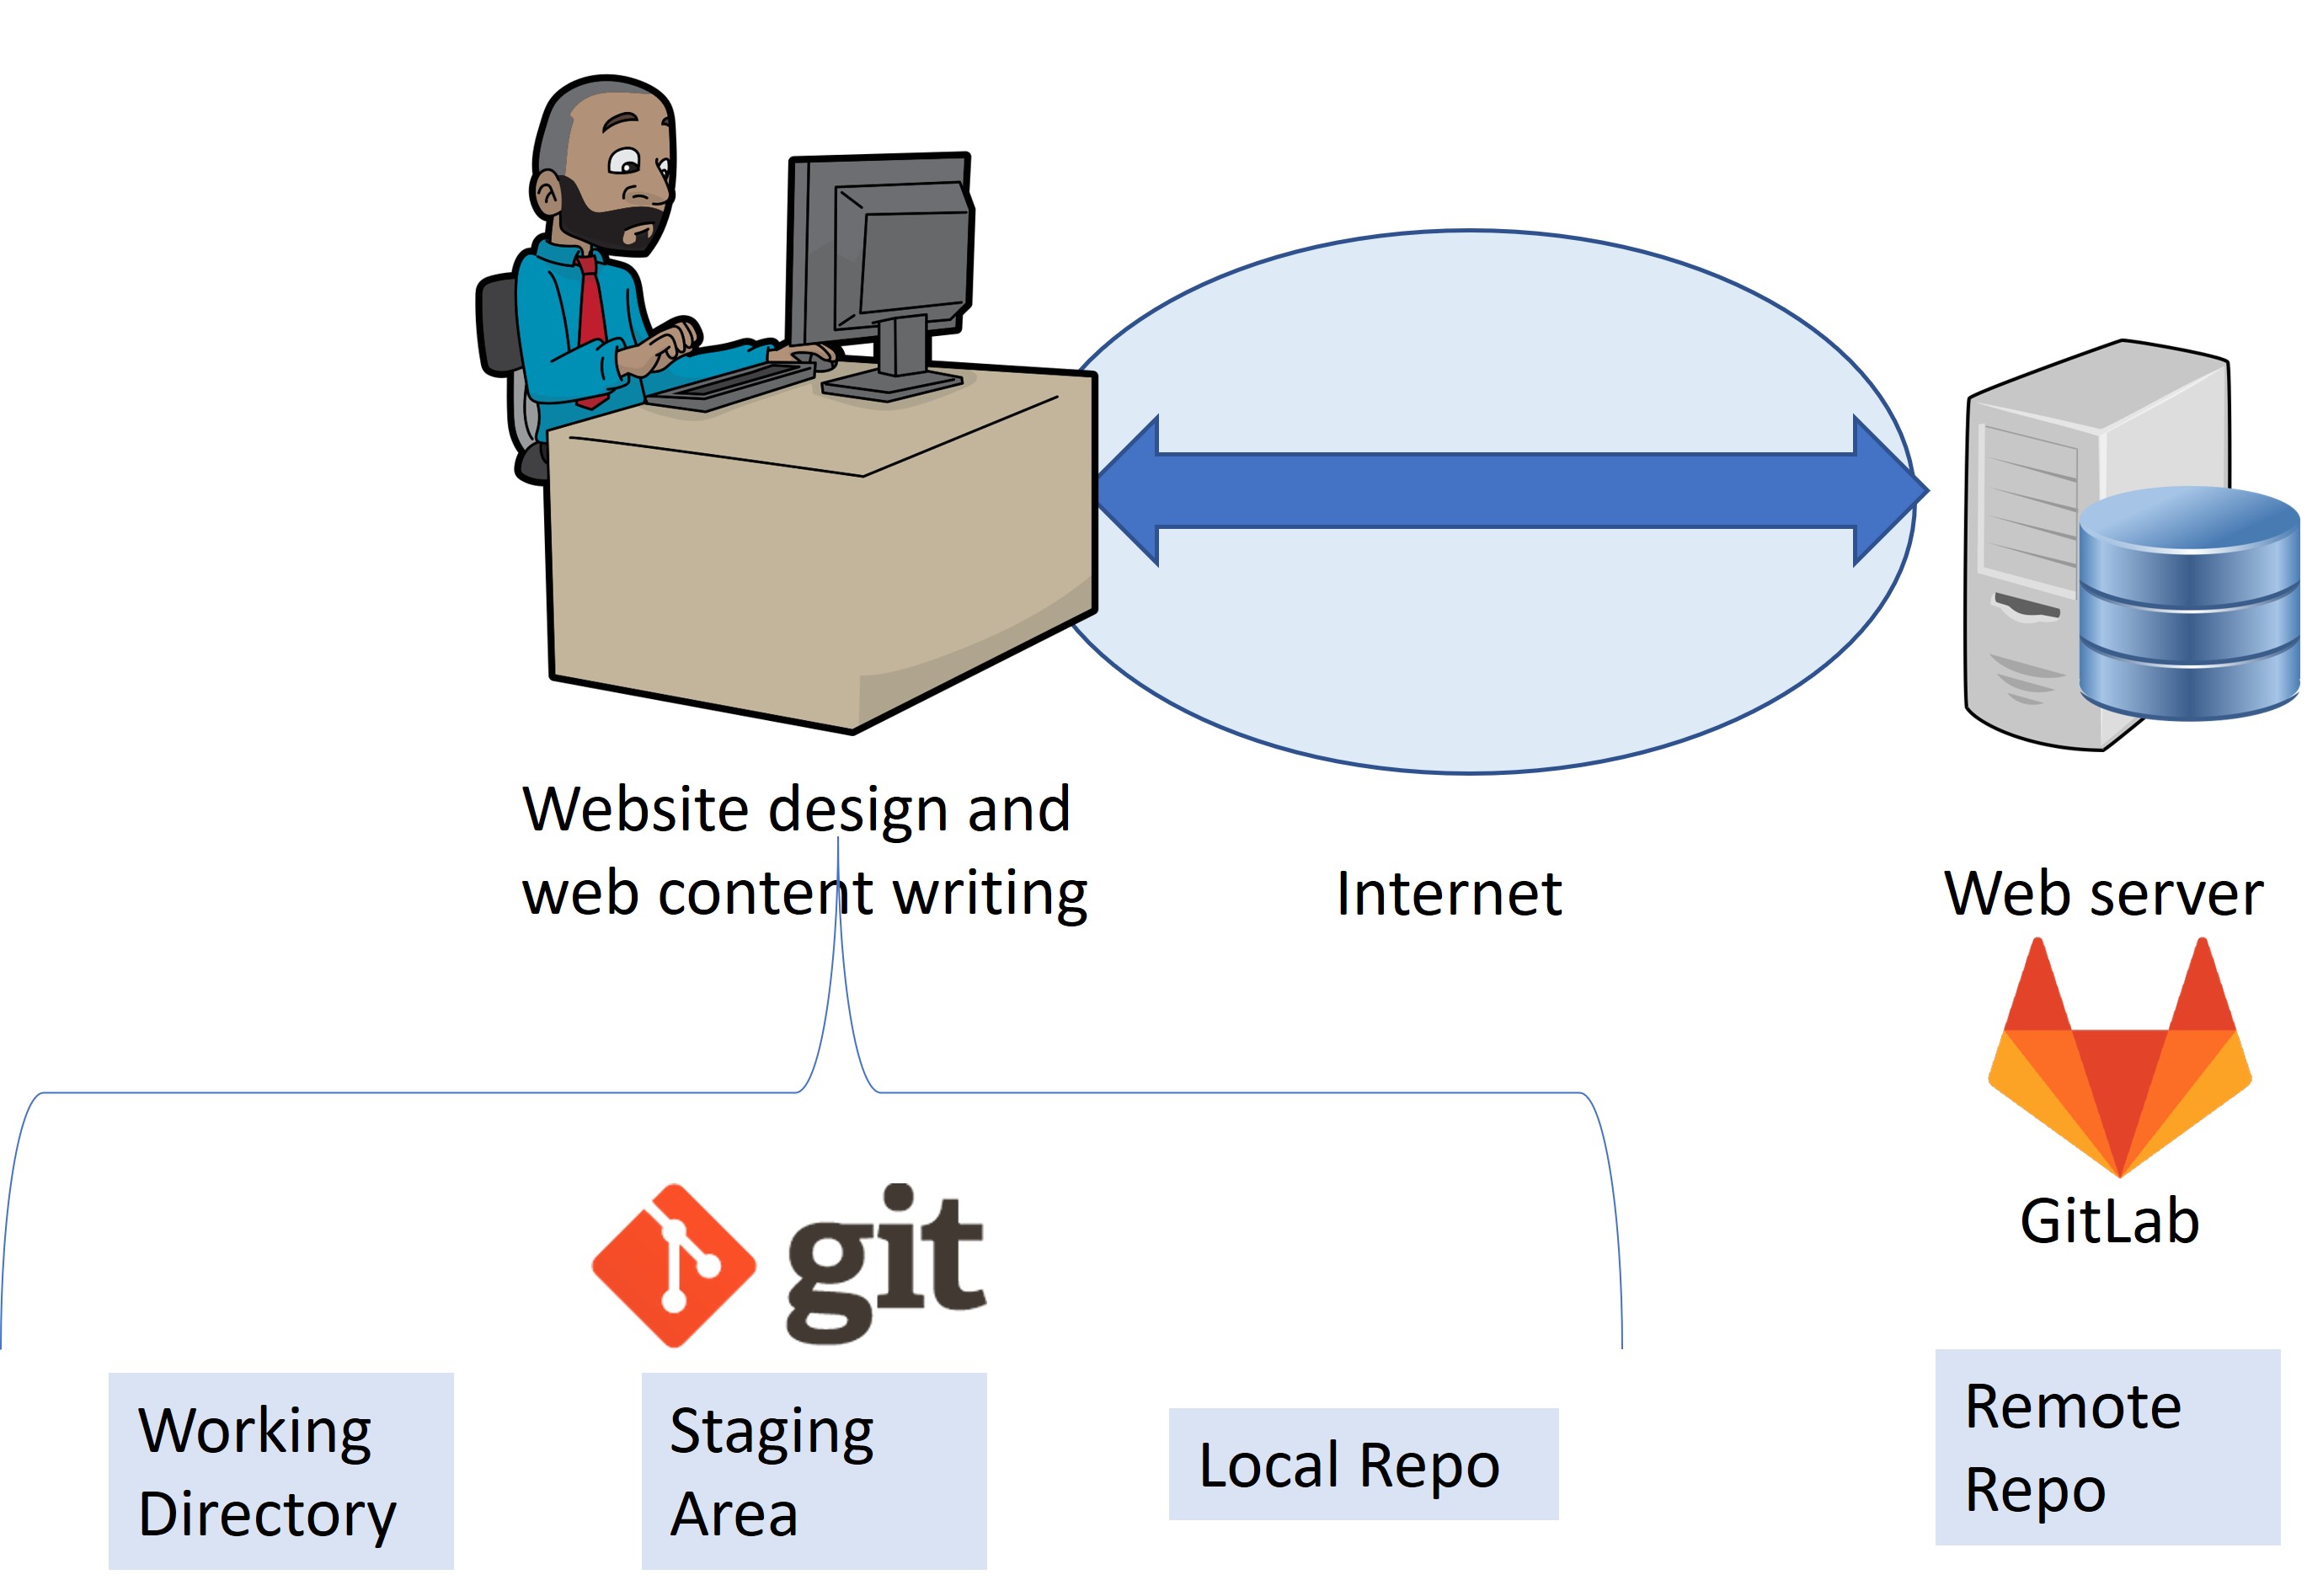 GitLab-Webservice-01